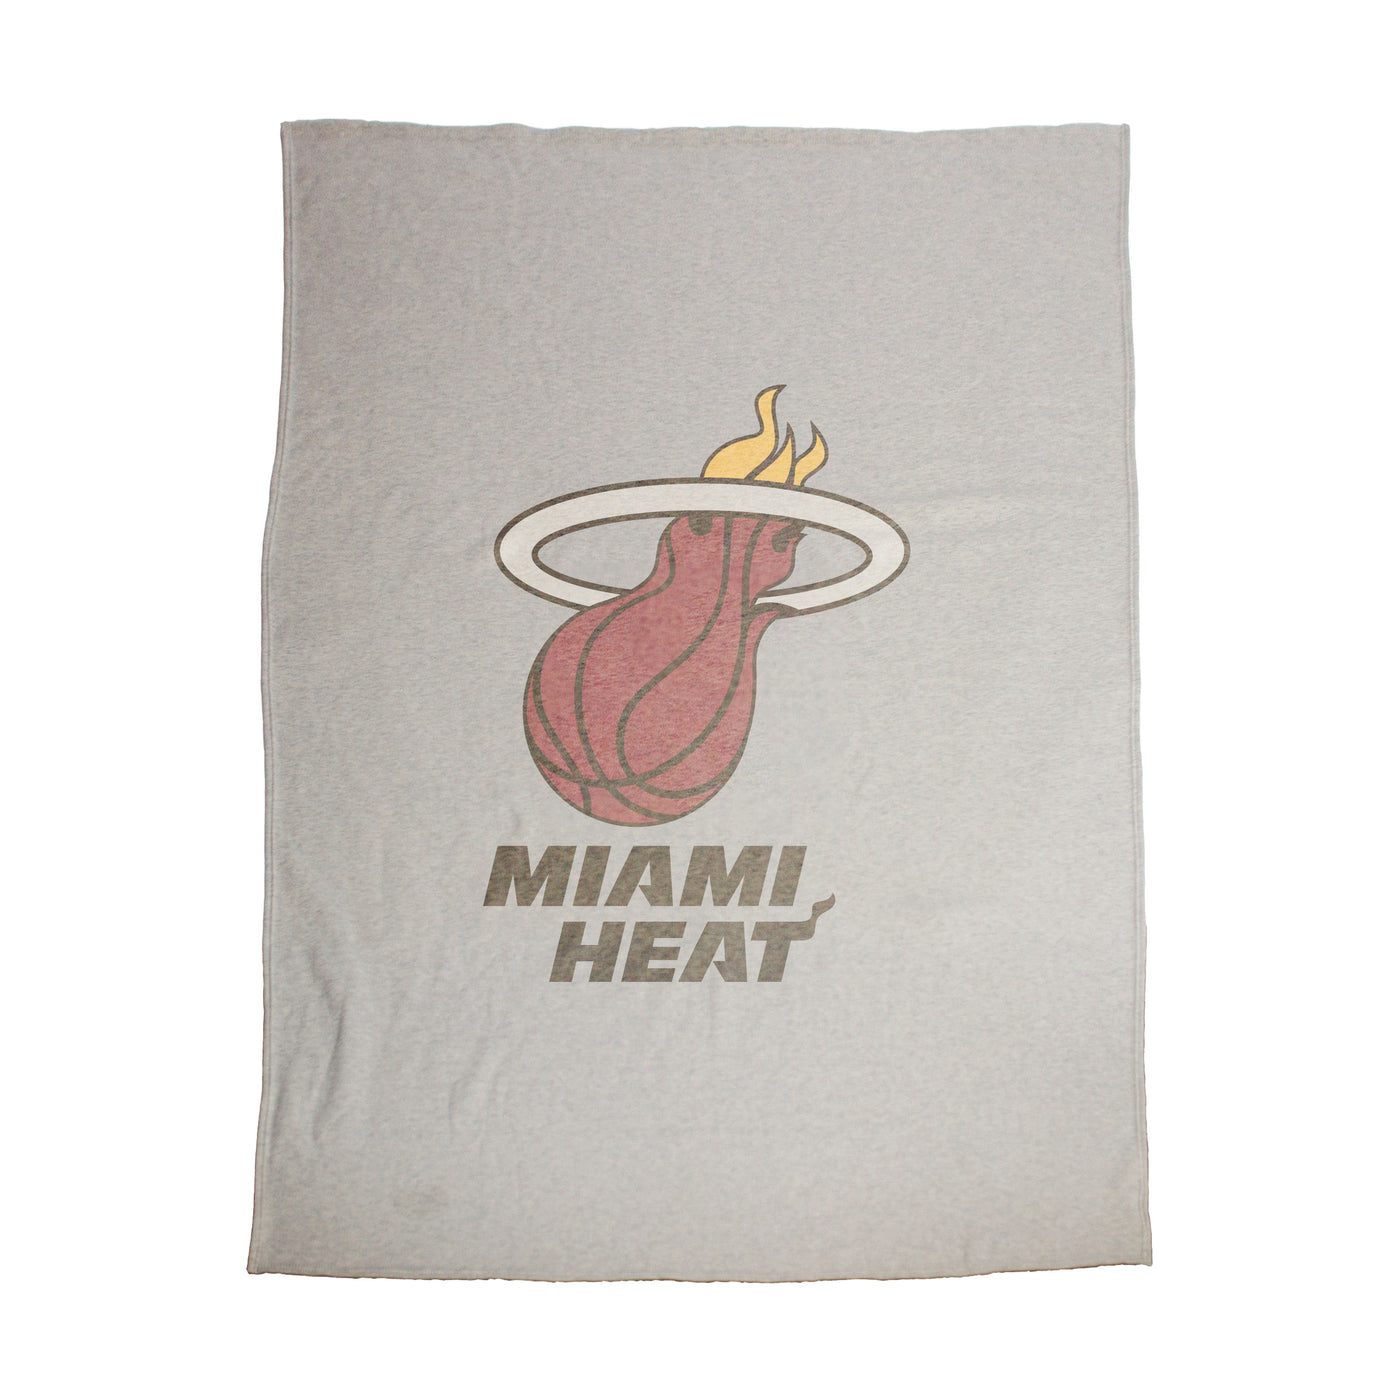 Miami Heat Oversized Logo Sublimated Sweatshirt Blanket